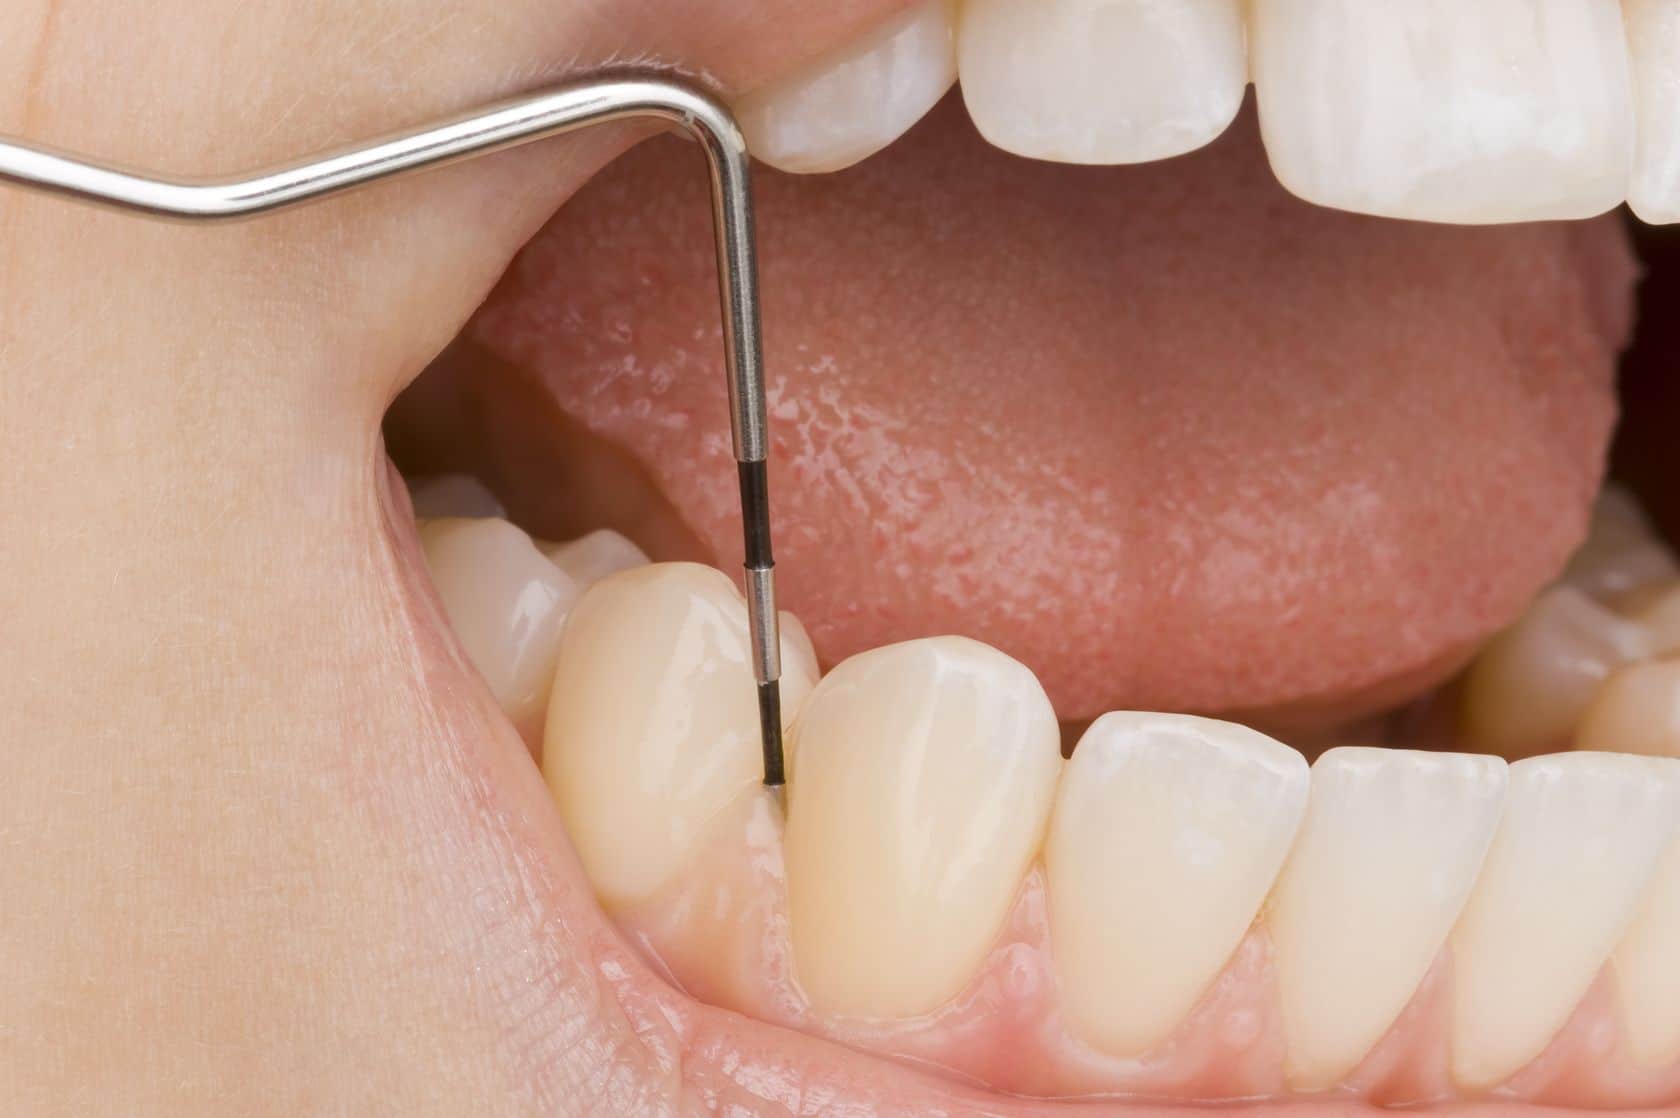 Cand este necesar tratamentul endodontic si de ce este important